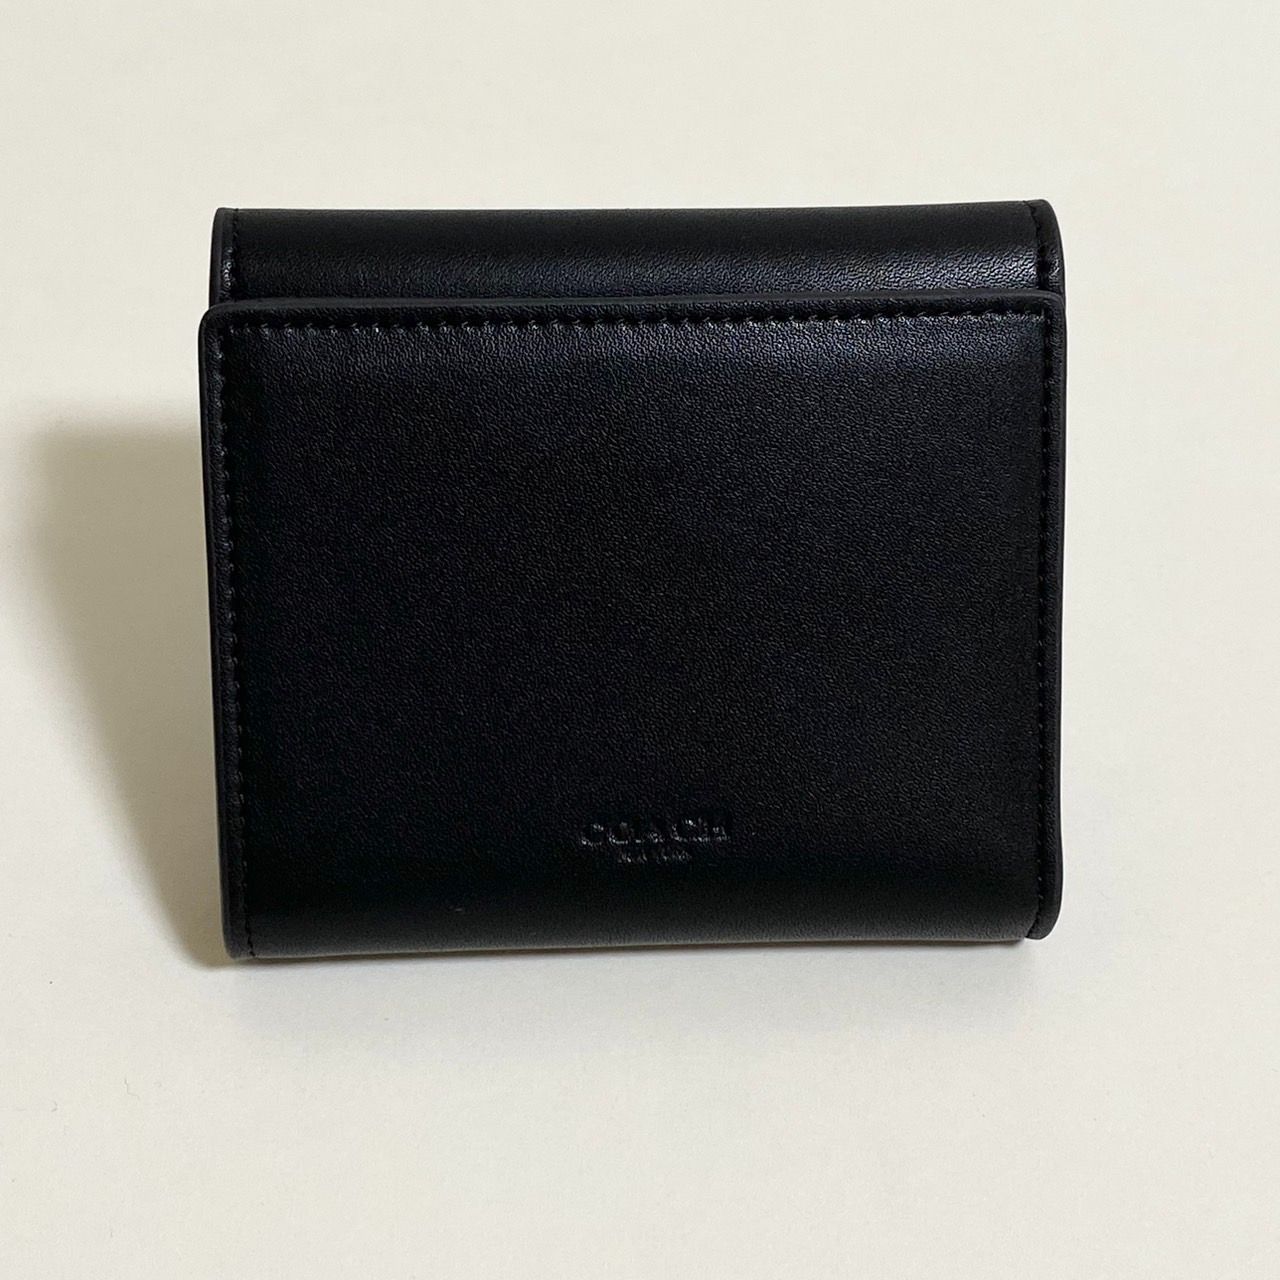 【新品未使用】コーチタビー スモール ウォレット 二つ折り財布 タン ブラック